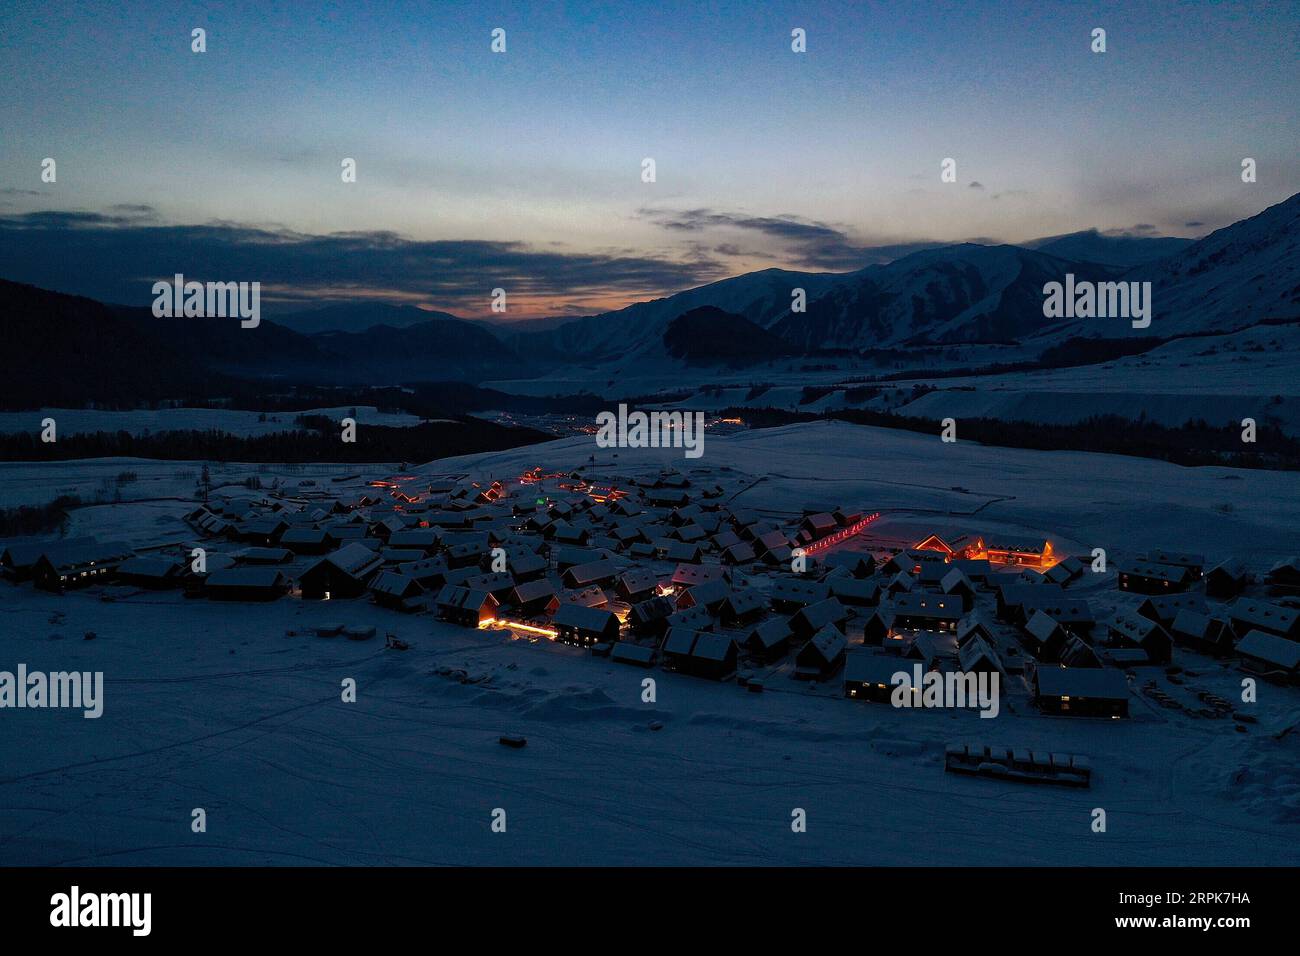 200101 -- BURQIN, 1 gennaio 2020 -- foto aerea scattata il 31 dicembre 2019 mostra il villaggio di Hemu dopo il tramonto nella contea di Burqin di Altay, nella regione autonoma di Xinjiang Uygur della Cina nordoccidentale. CHINA-XINJIANG-BURQIN-WINTER-TOURISM CN SONGXYANHUA PUBLICATIONXNOTXINXCHN Foto Stock